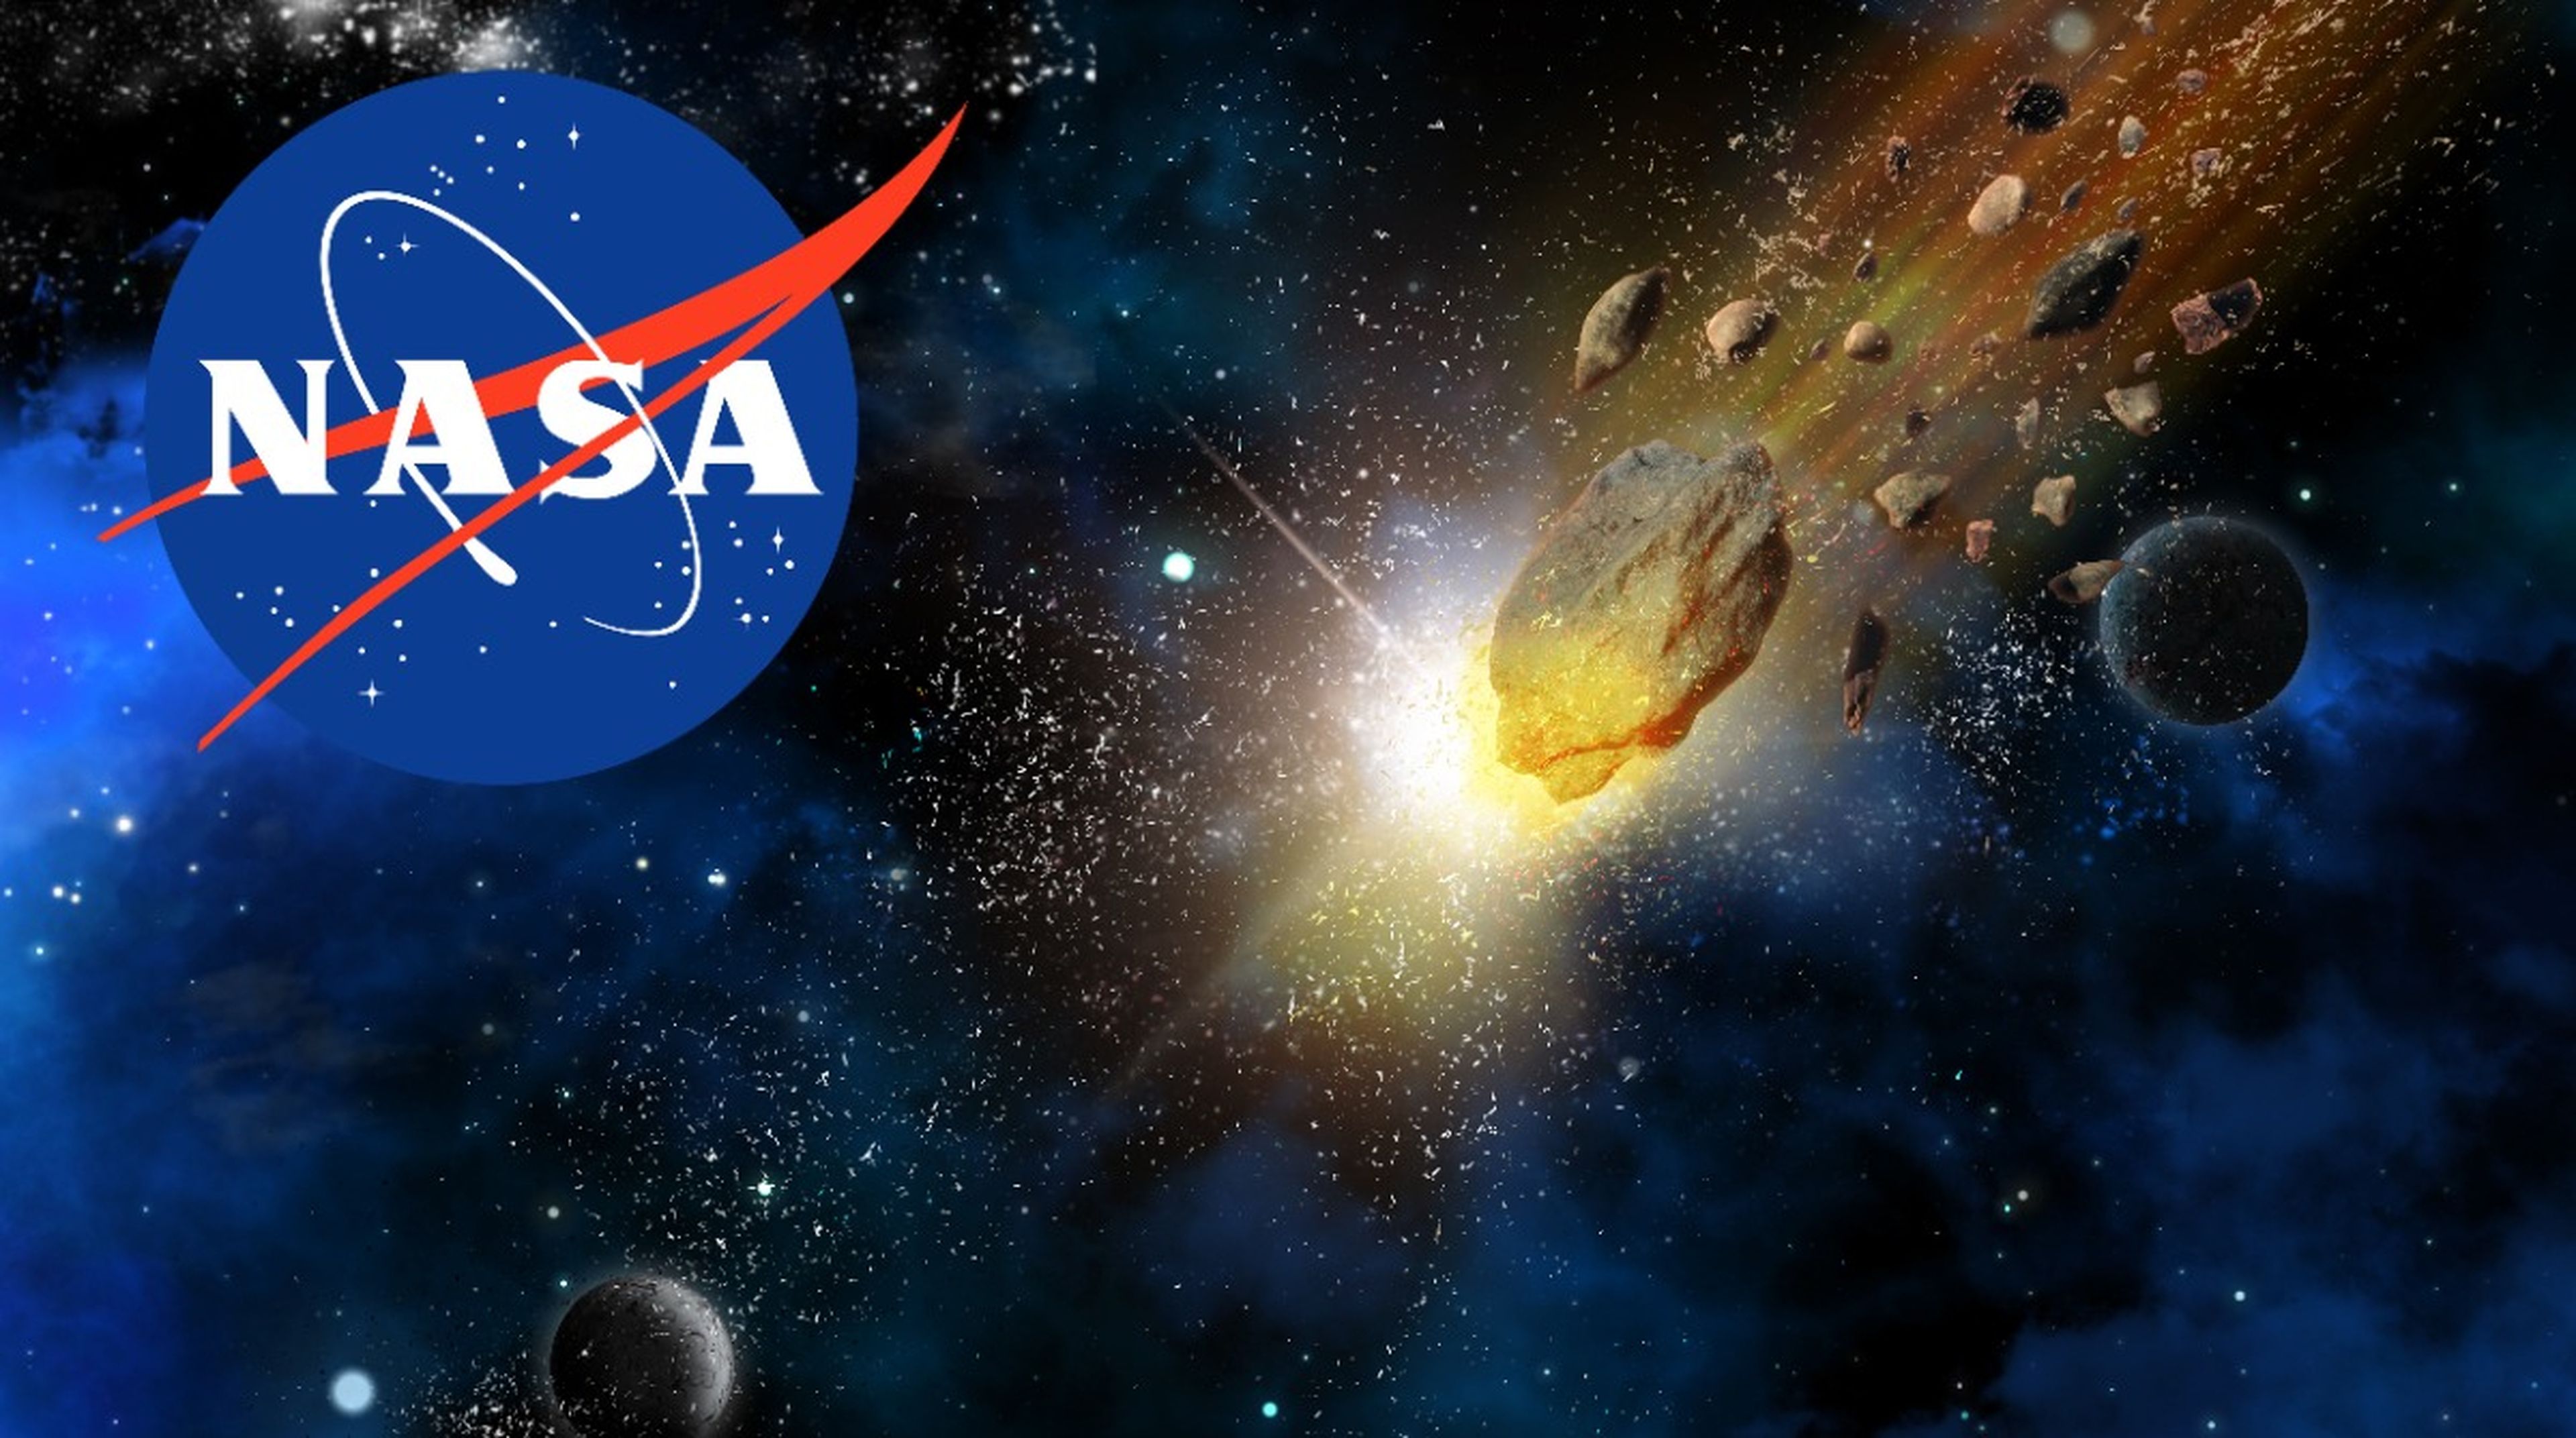 La NASA afirma que el impacto de cohetes contra asteroides es nuestra mejor defensa planetaria